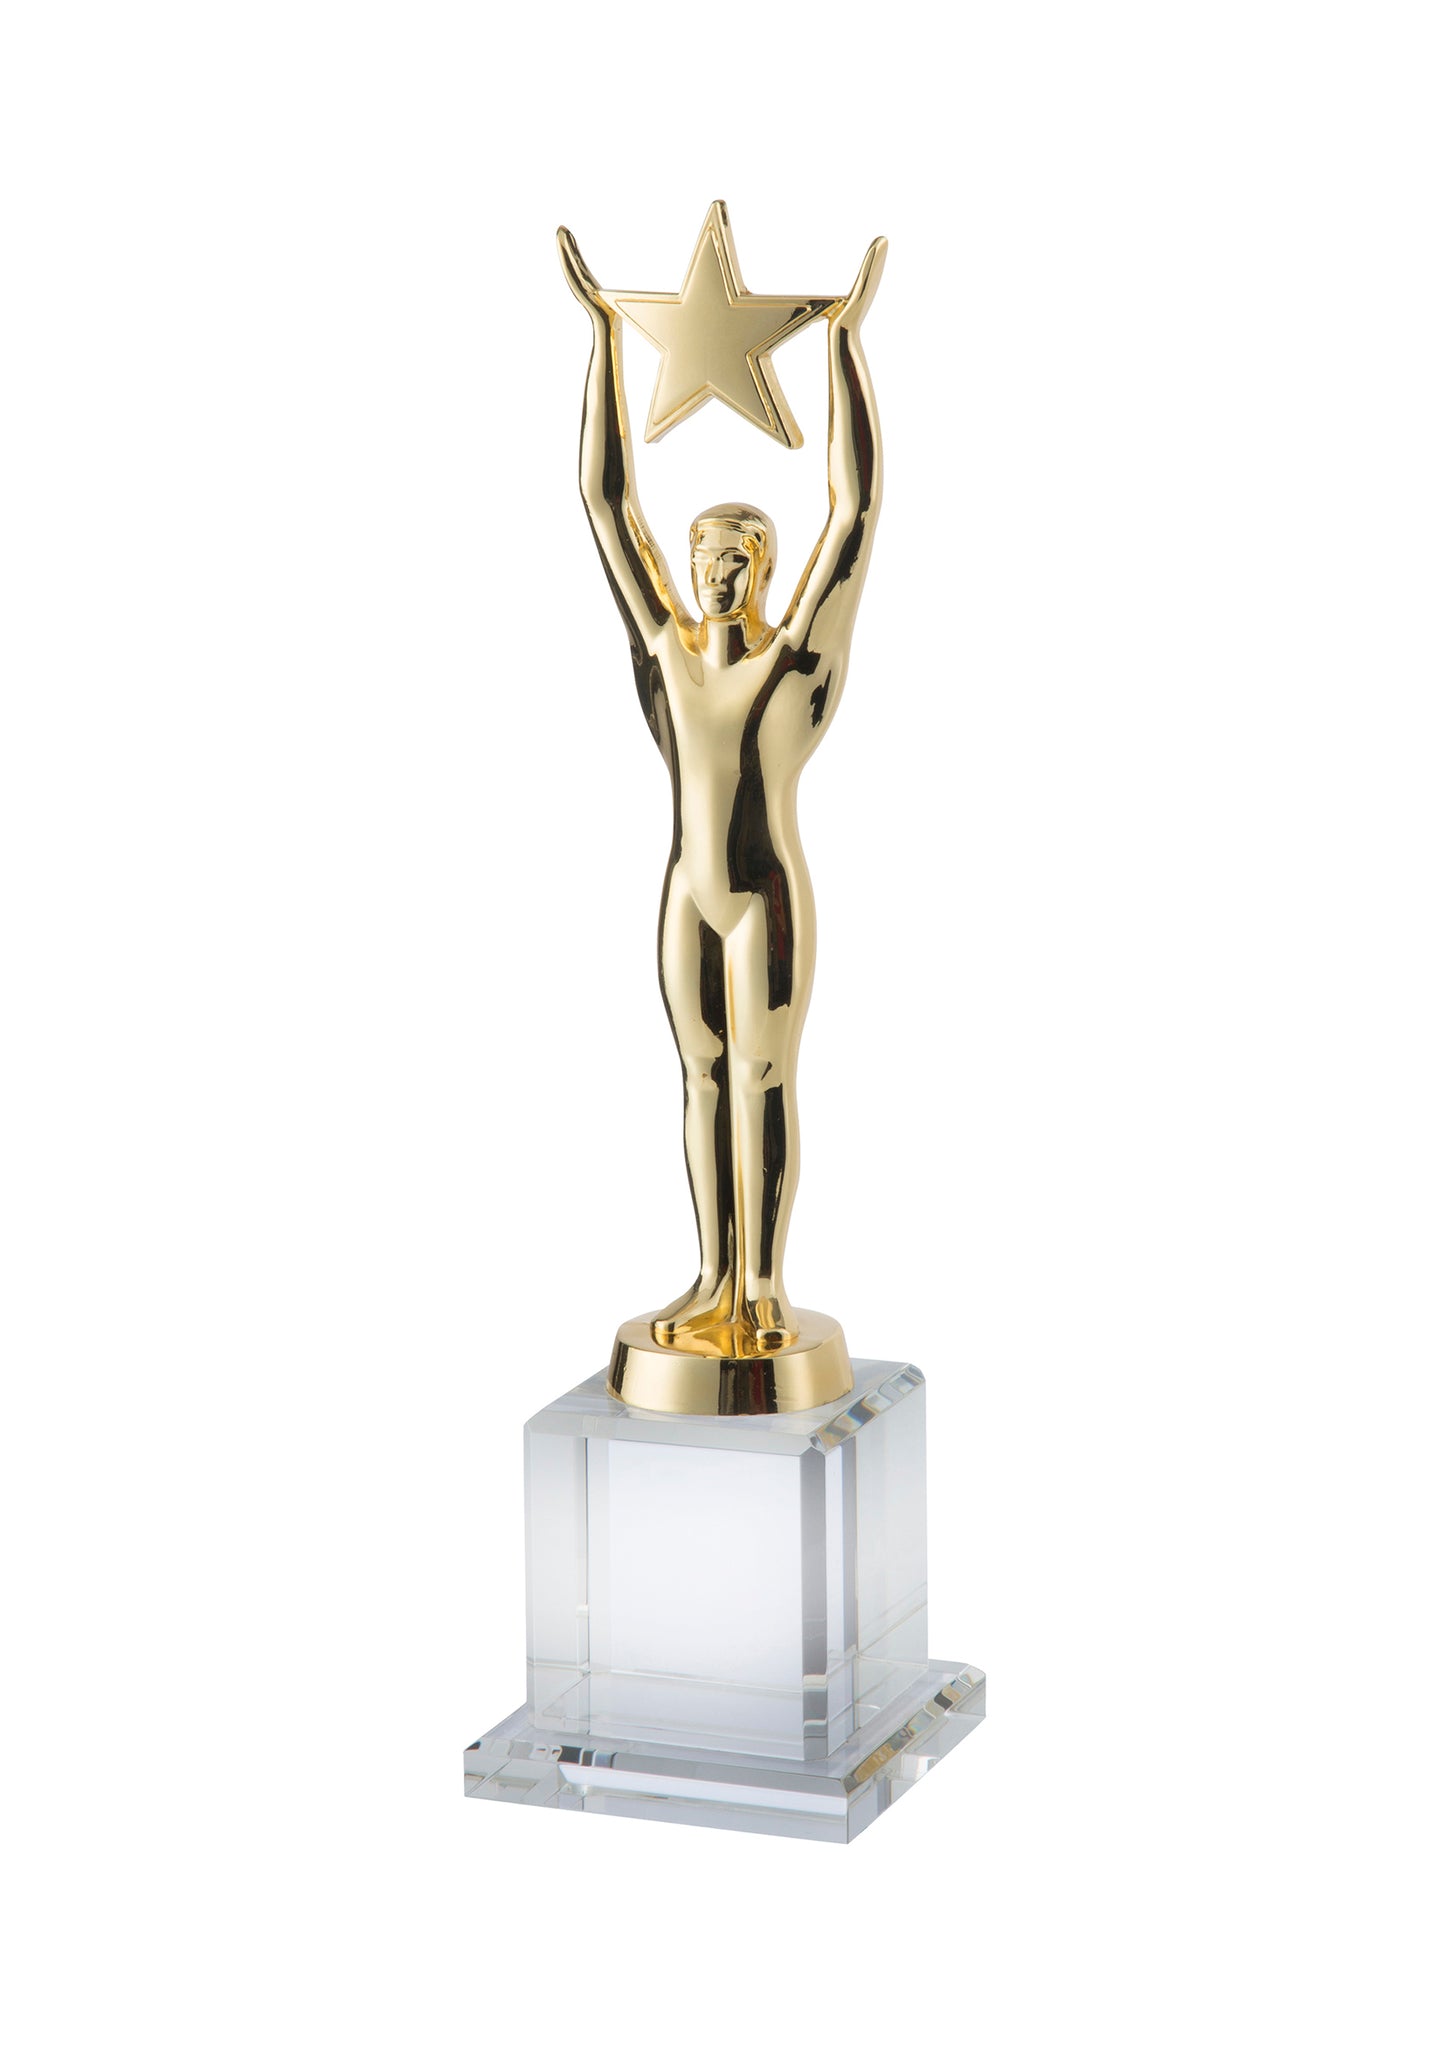 LG Metal Figure and Crystal Base Award